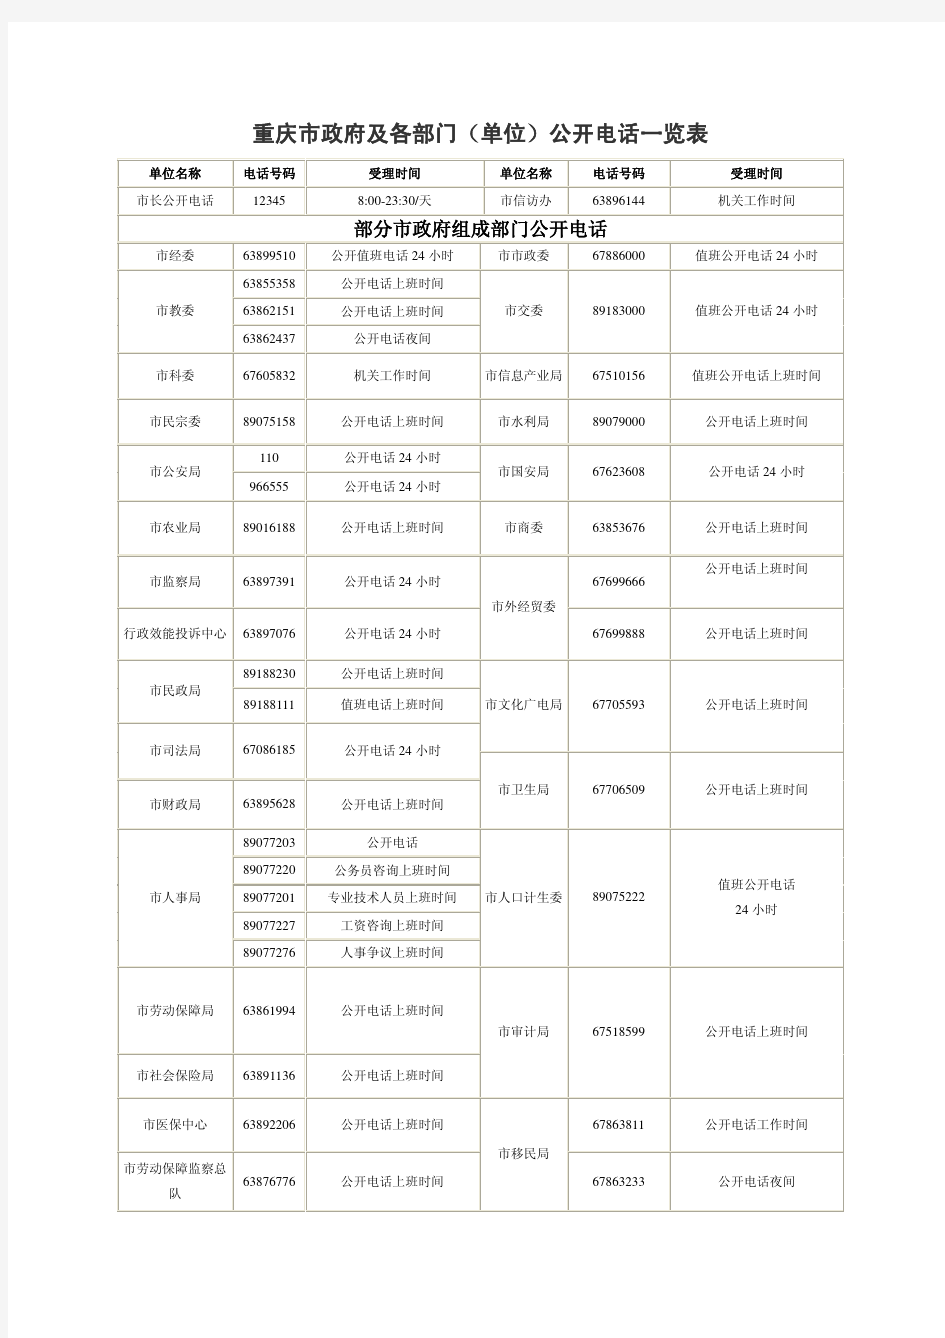 重庆市政府及各部门(单位)公开电话一览表